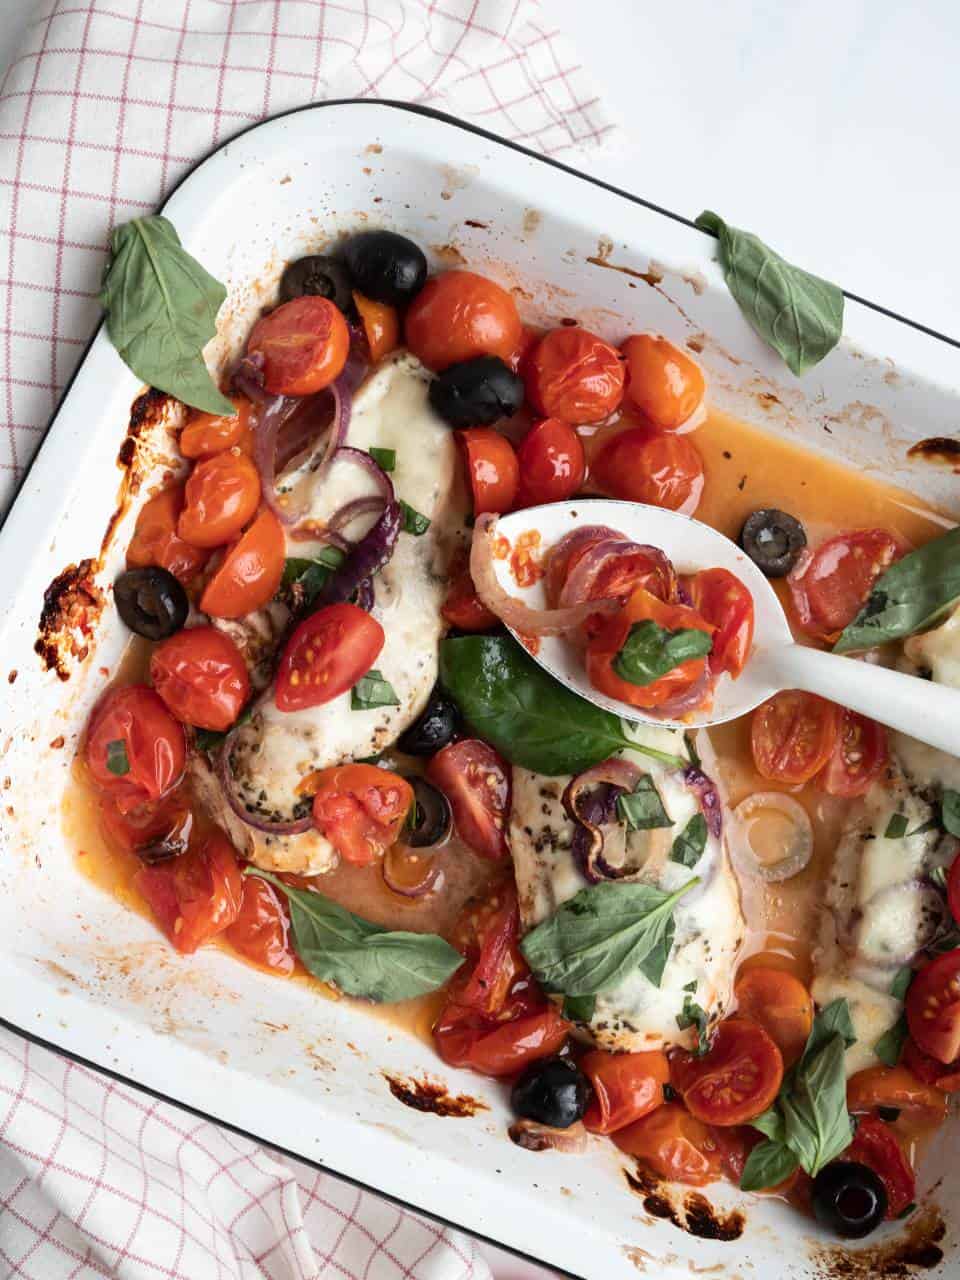 Italiaanse kip uit de oven met tomaten, mozzarella en basilicum. Kipfilet recepten, gezonde kipfilet recepten uit de oven, kipfilet gerechten 